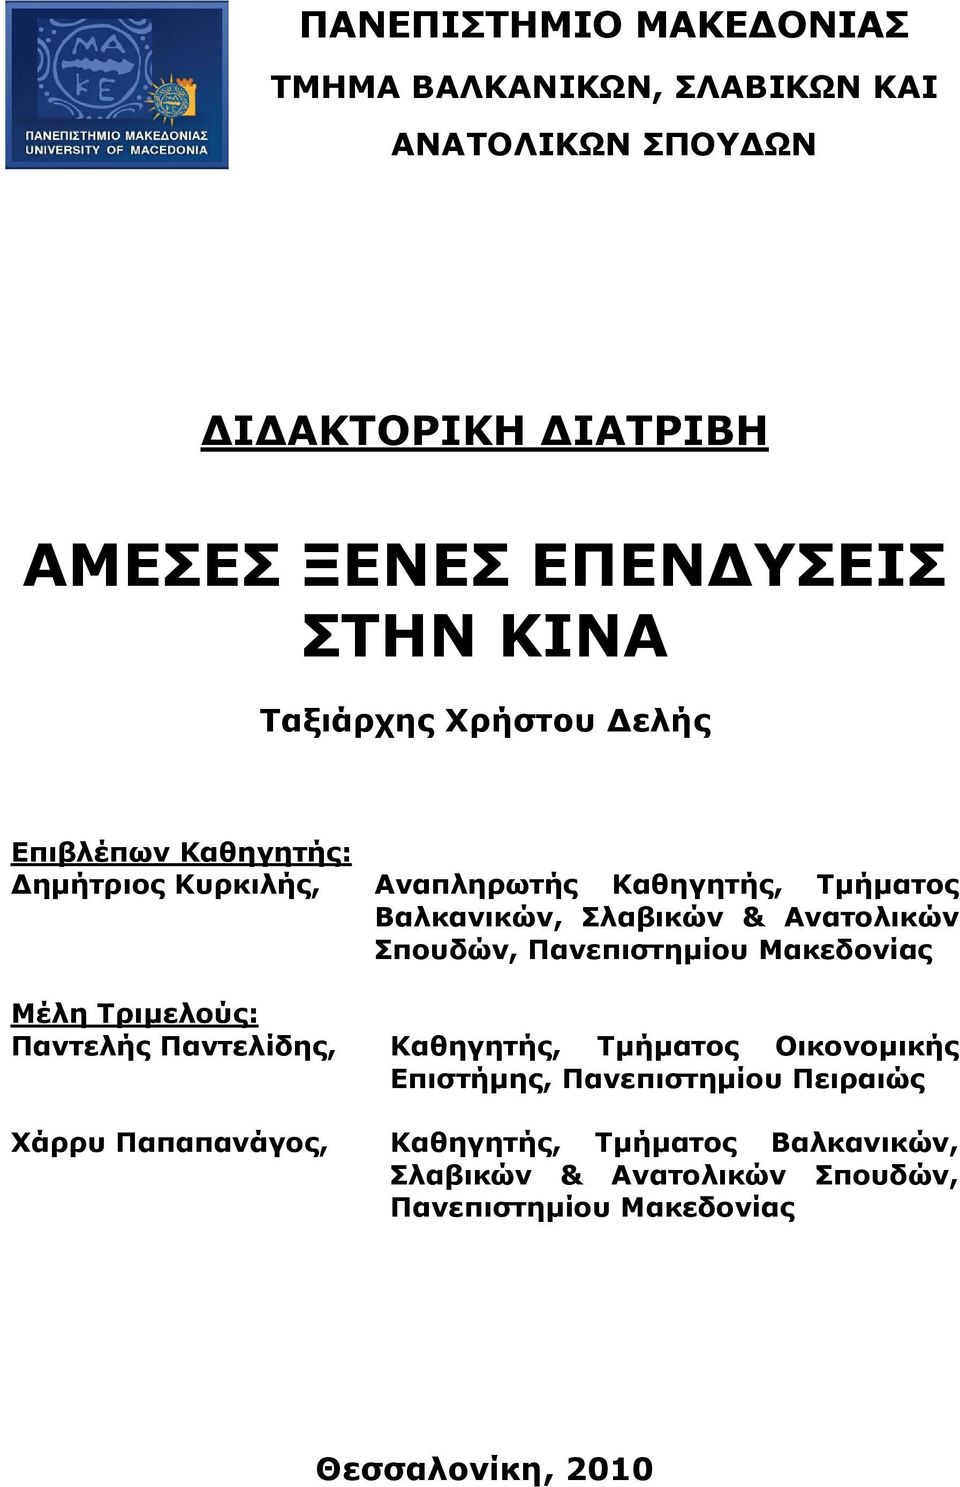 Σπουδών, Πανεπιστηµίου Μακεδονίας Μέλη Τριµελούς: Παντελής Παντελίδης, Καθηγητής, Τµήµατος Οικονοµικής Επιστήµης, Πανεπιστηµίου